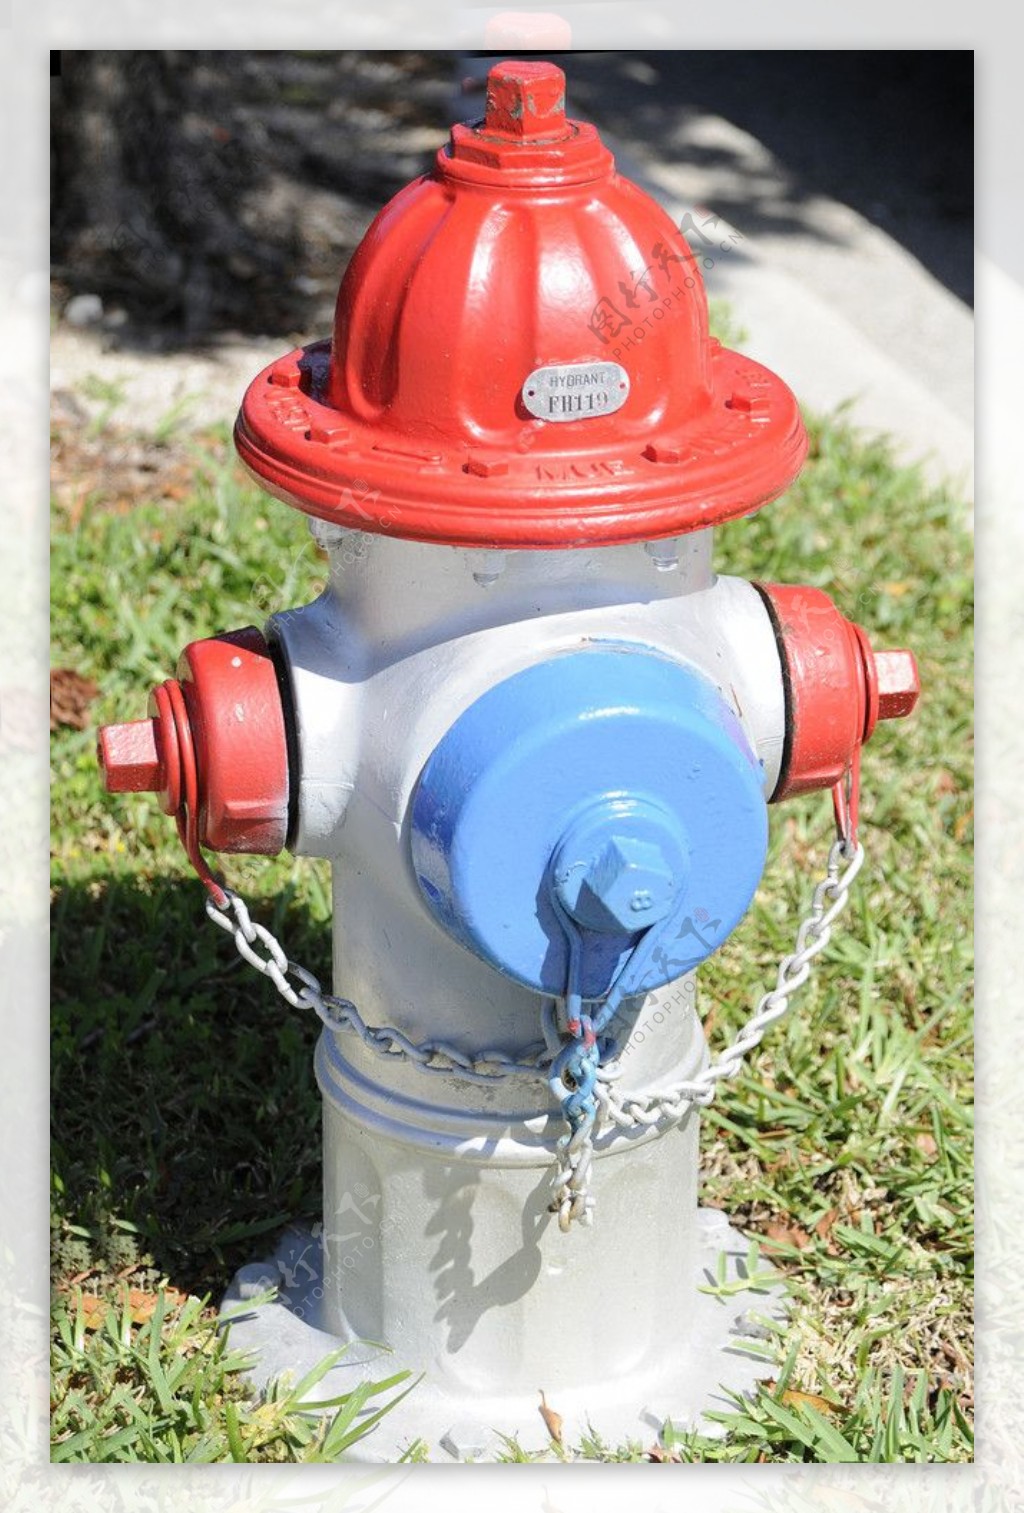 消防栓图片